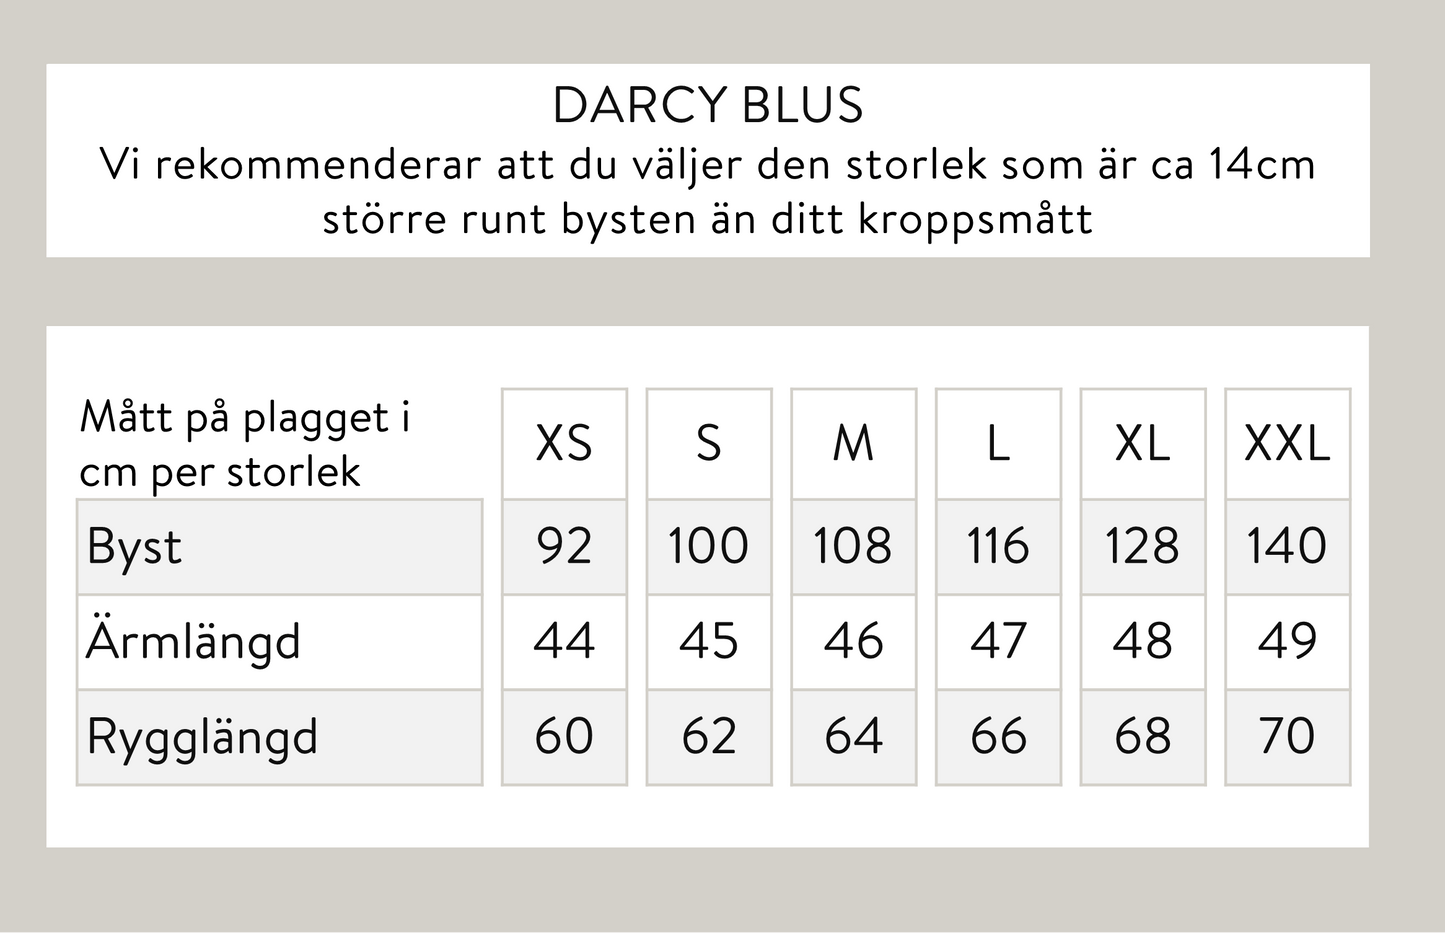 Darcy blus - Blå